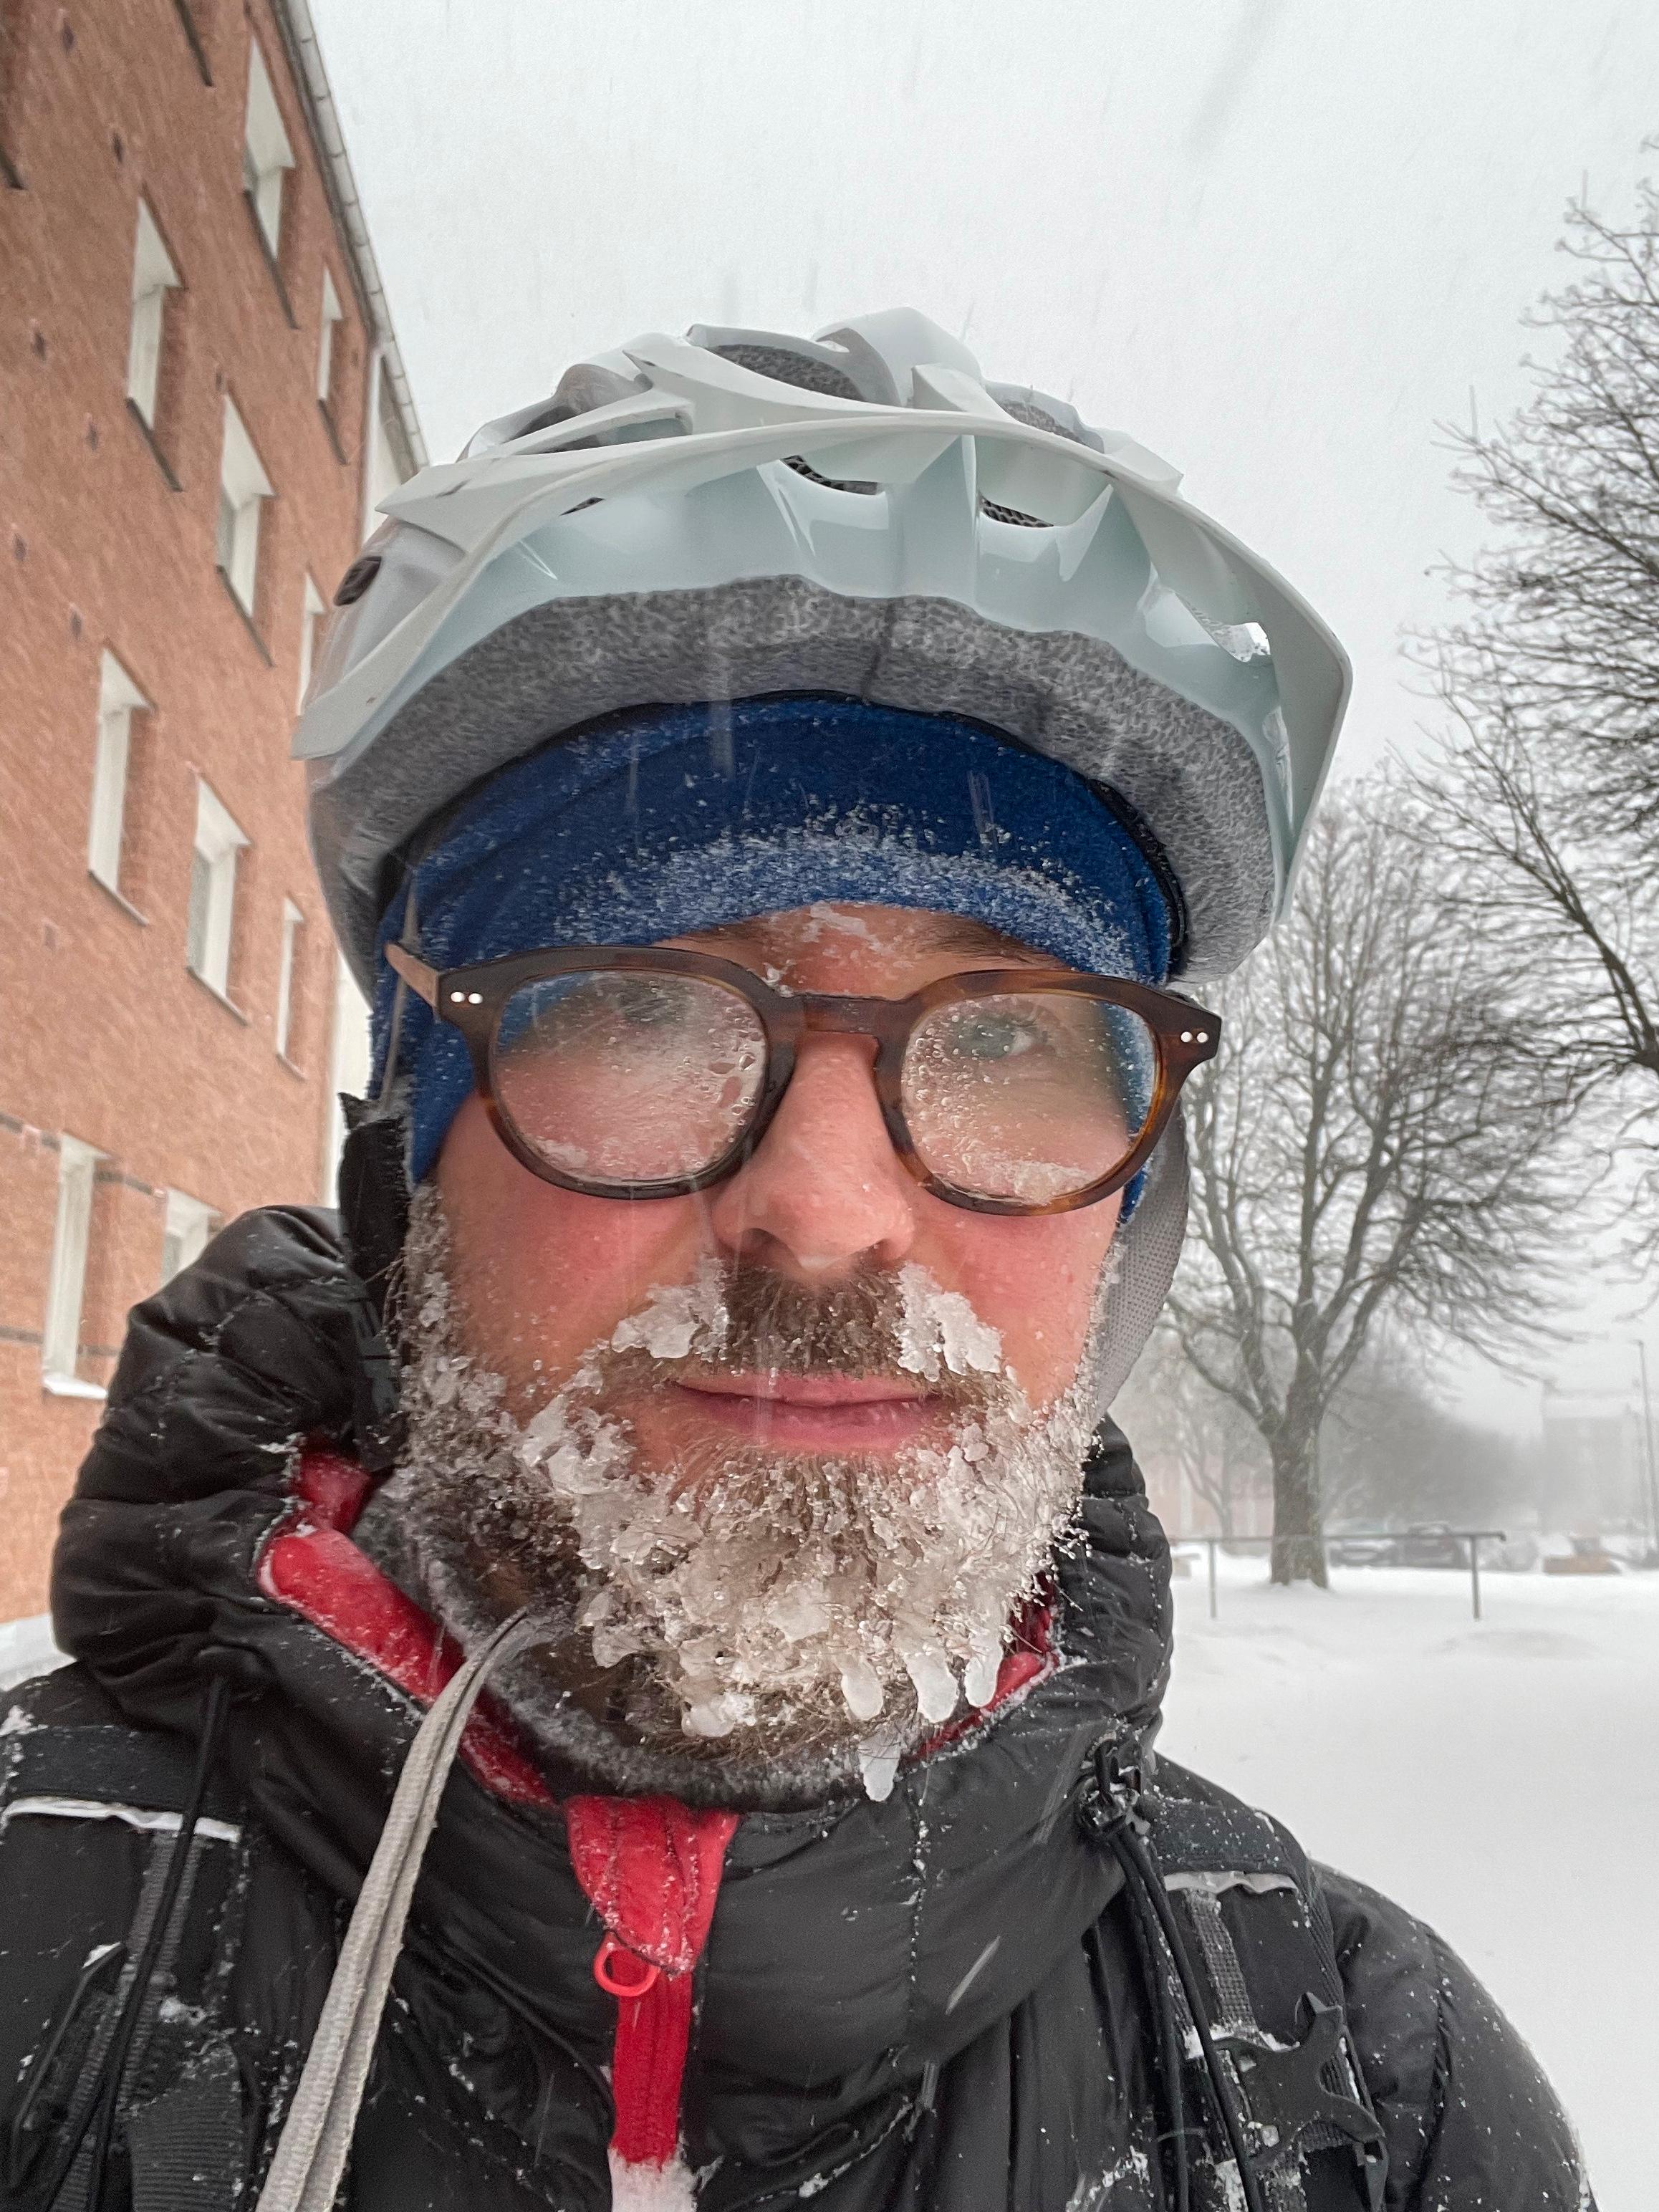 ENGASJEMENT: Det er billigere, men ikke nødvendigvis enklere å dumpster dive. Her er Torjus Bredvold på sykkeltur i en snøstorm, på jakt etter nye søppeldunker å handle i. 